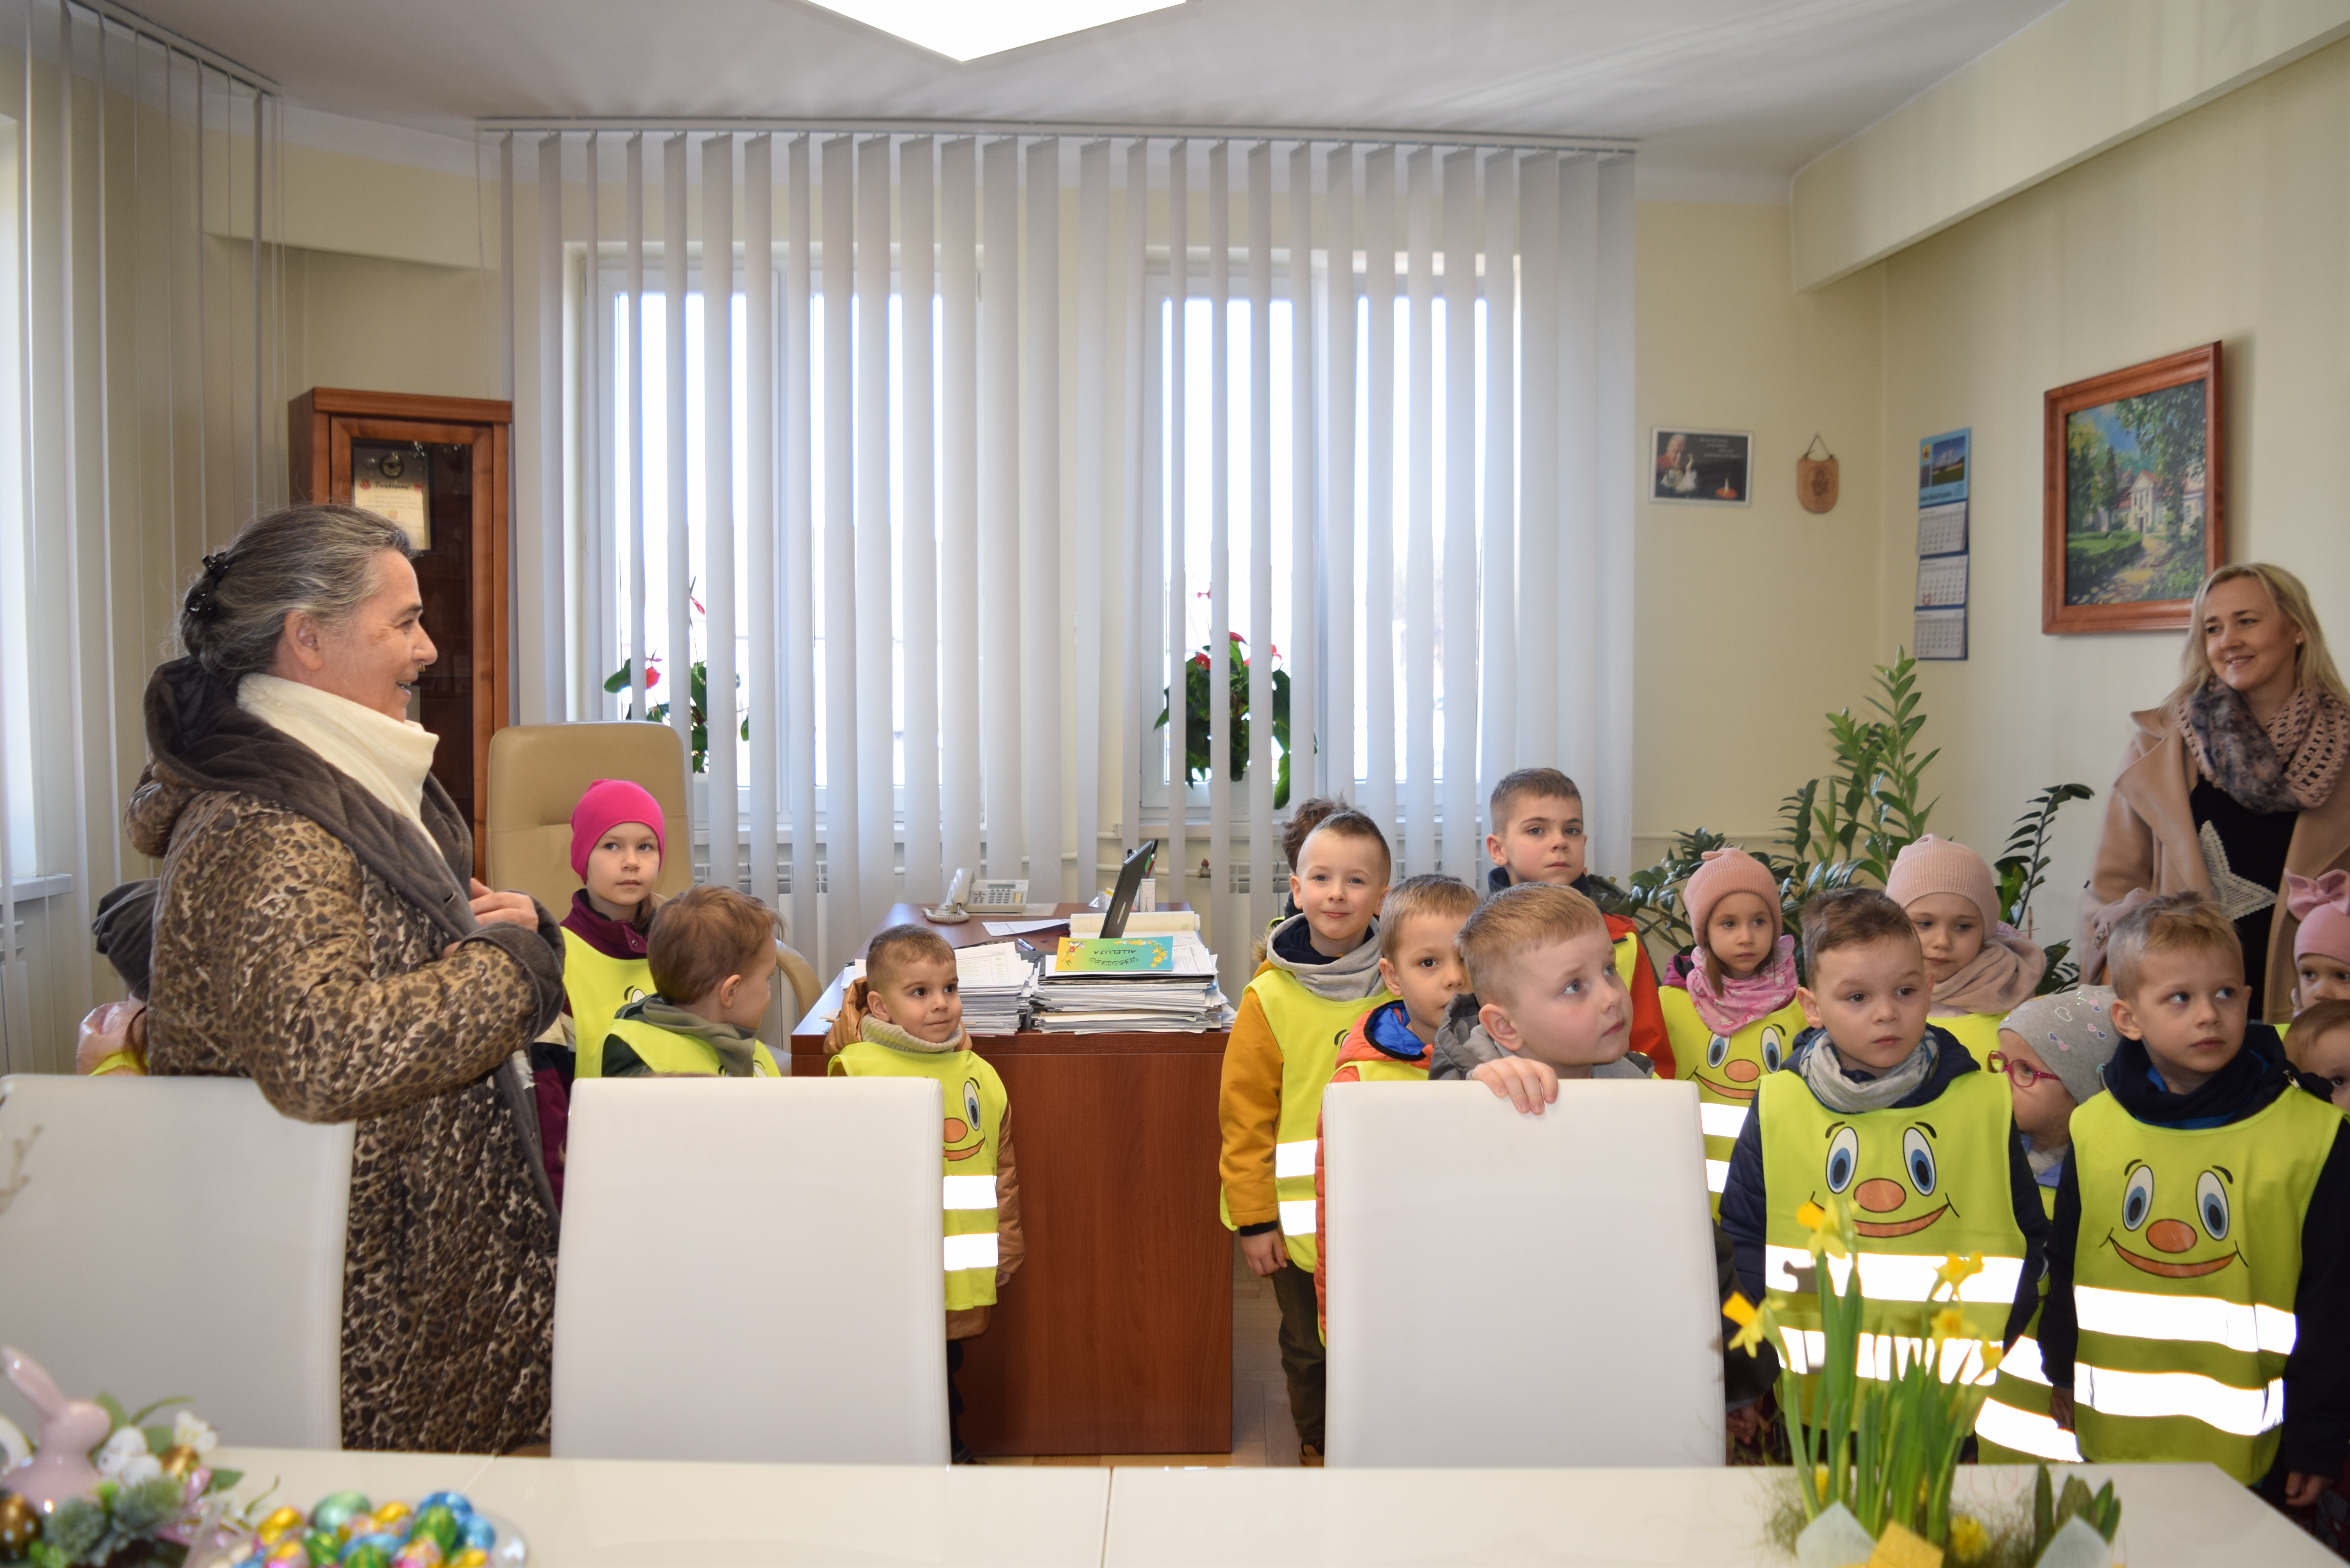  Wizyta przedszkolaków w Urzędzie Gminy i Miasta w Przysusze